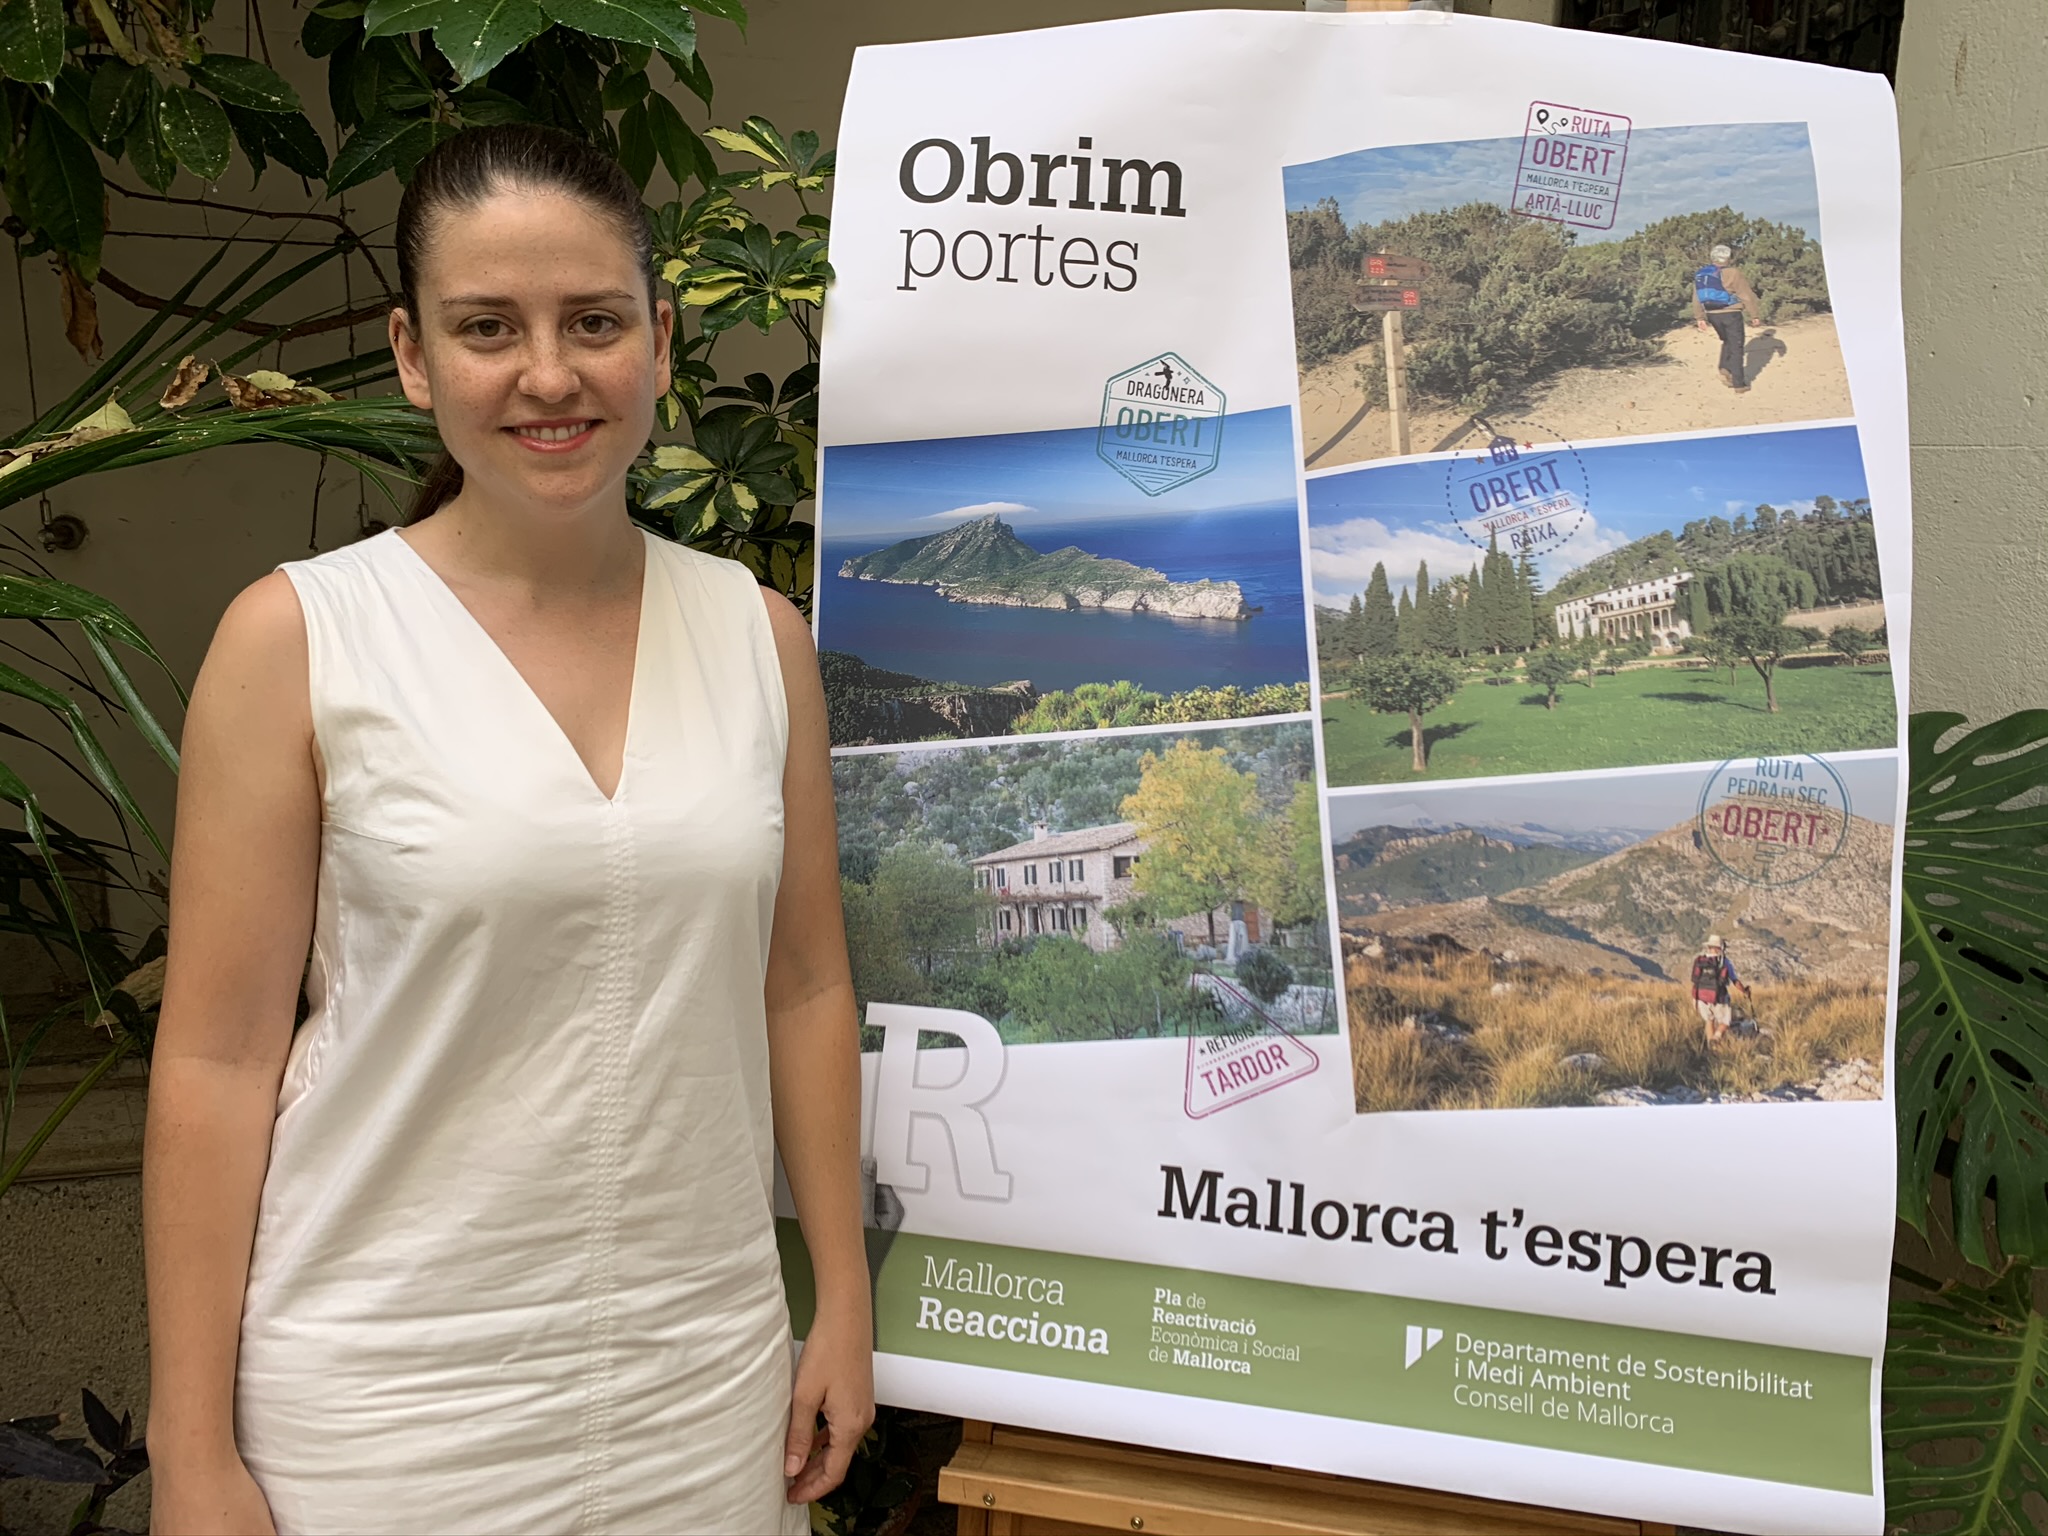 La vicepresidenta i consellera de Sostenibilitat i Medi Ambient, Aurora Ribot i la campanya Mallorca T'espera